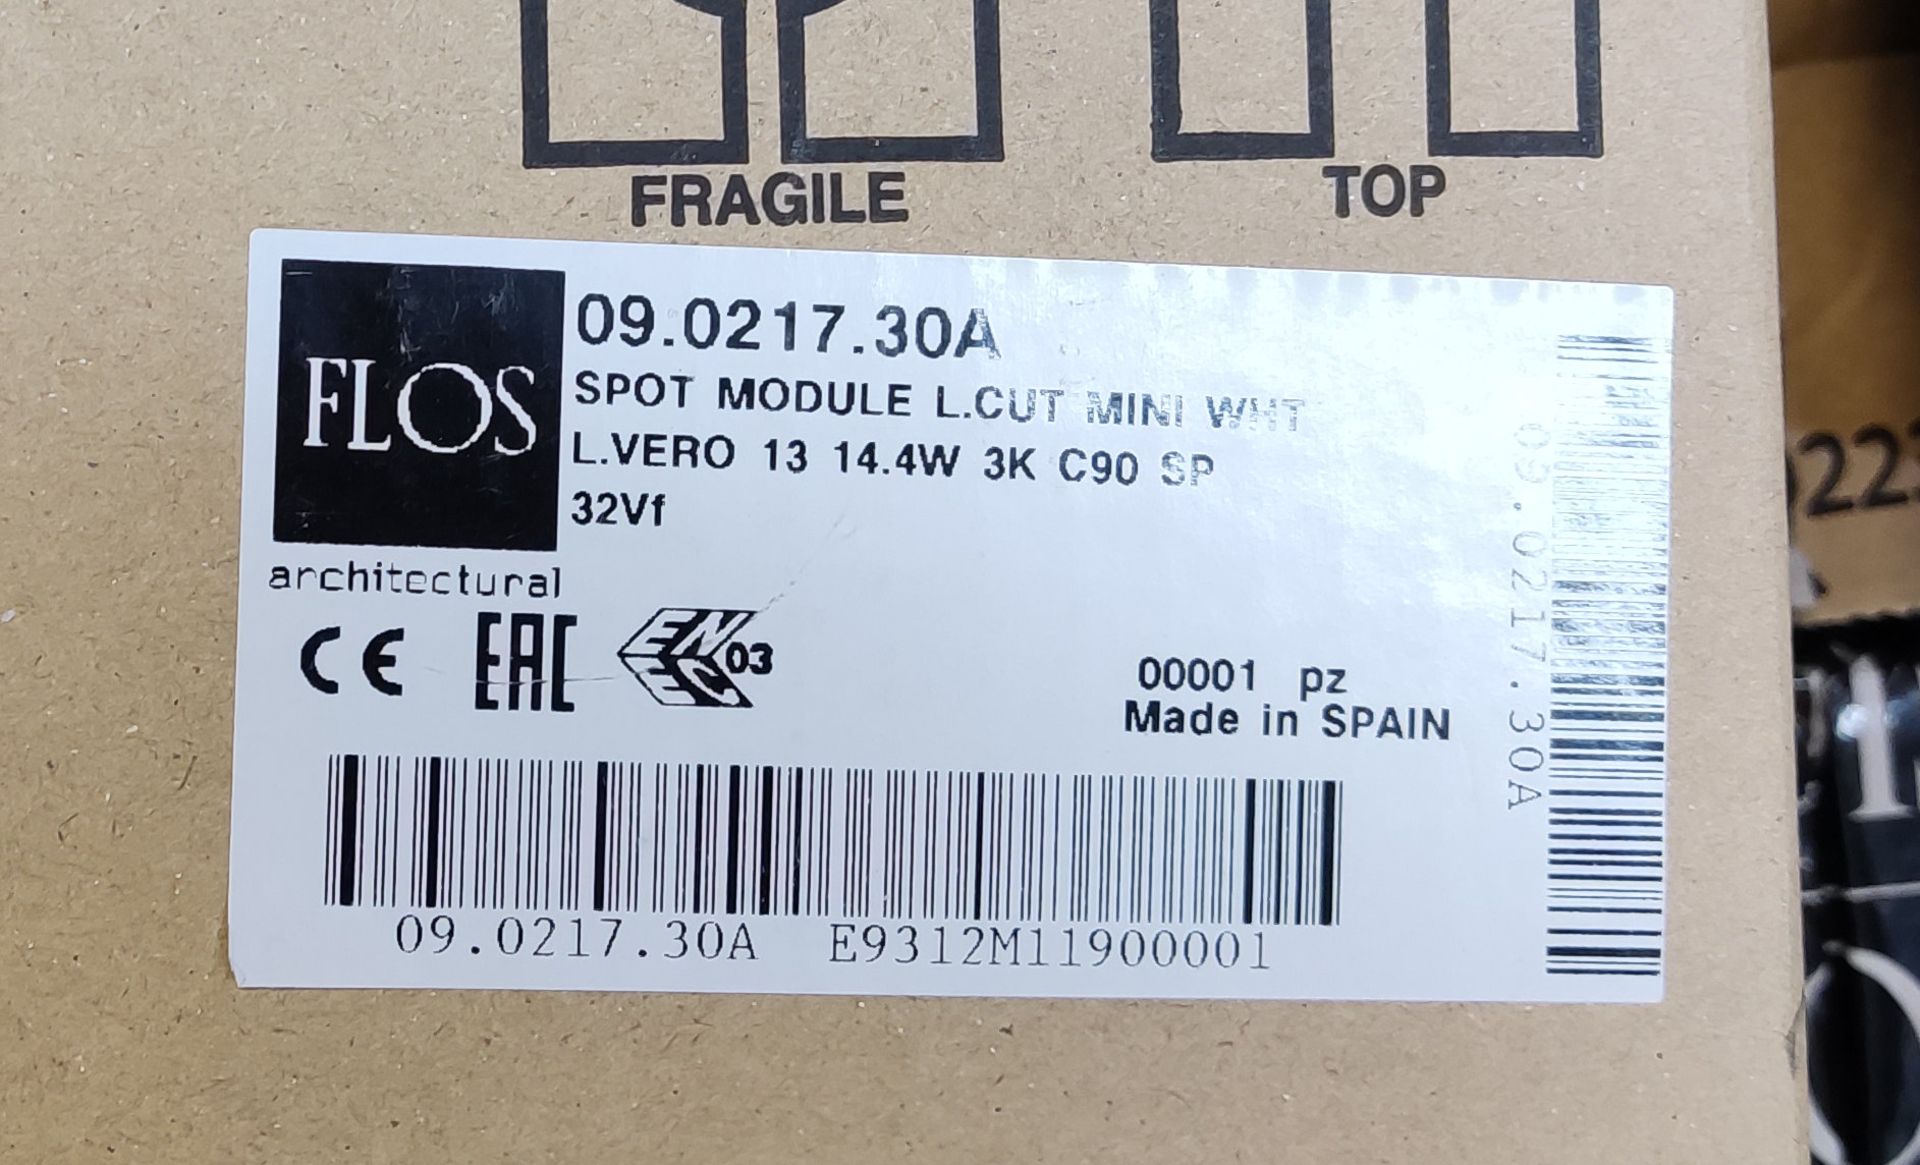 4 x FLOS Flos Spot Module Light Cut Mini Led White - L.Vero 12 14.4W 3K C90 Sp 32Vf - 09.0217. - Image 2 of 3